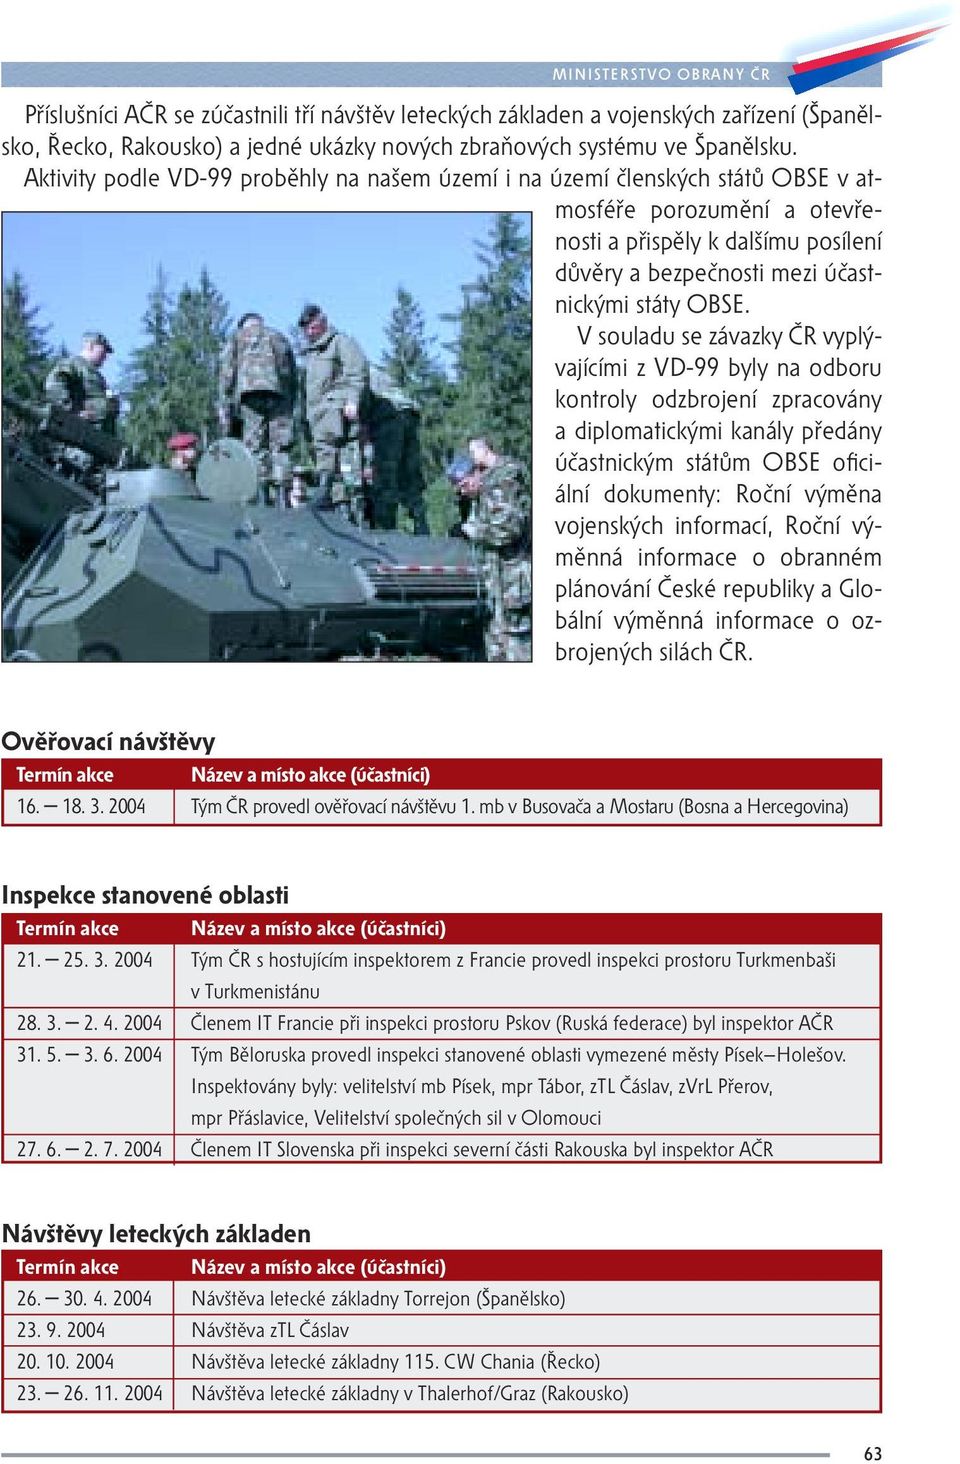 V souladu se závazky ČR vyplývajícími z VD-99 byly na odboru kontroly odzbrojení zpracovány a diplomatickými kanály předány účastnickým státům OBSE oficiální dokumenty: Roční výměna vojenských